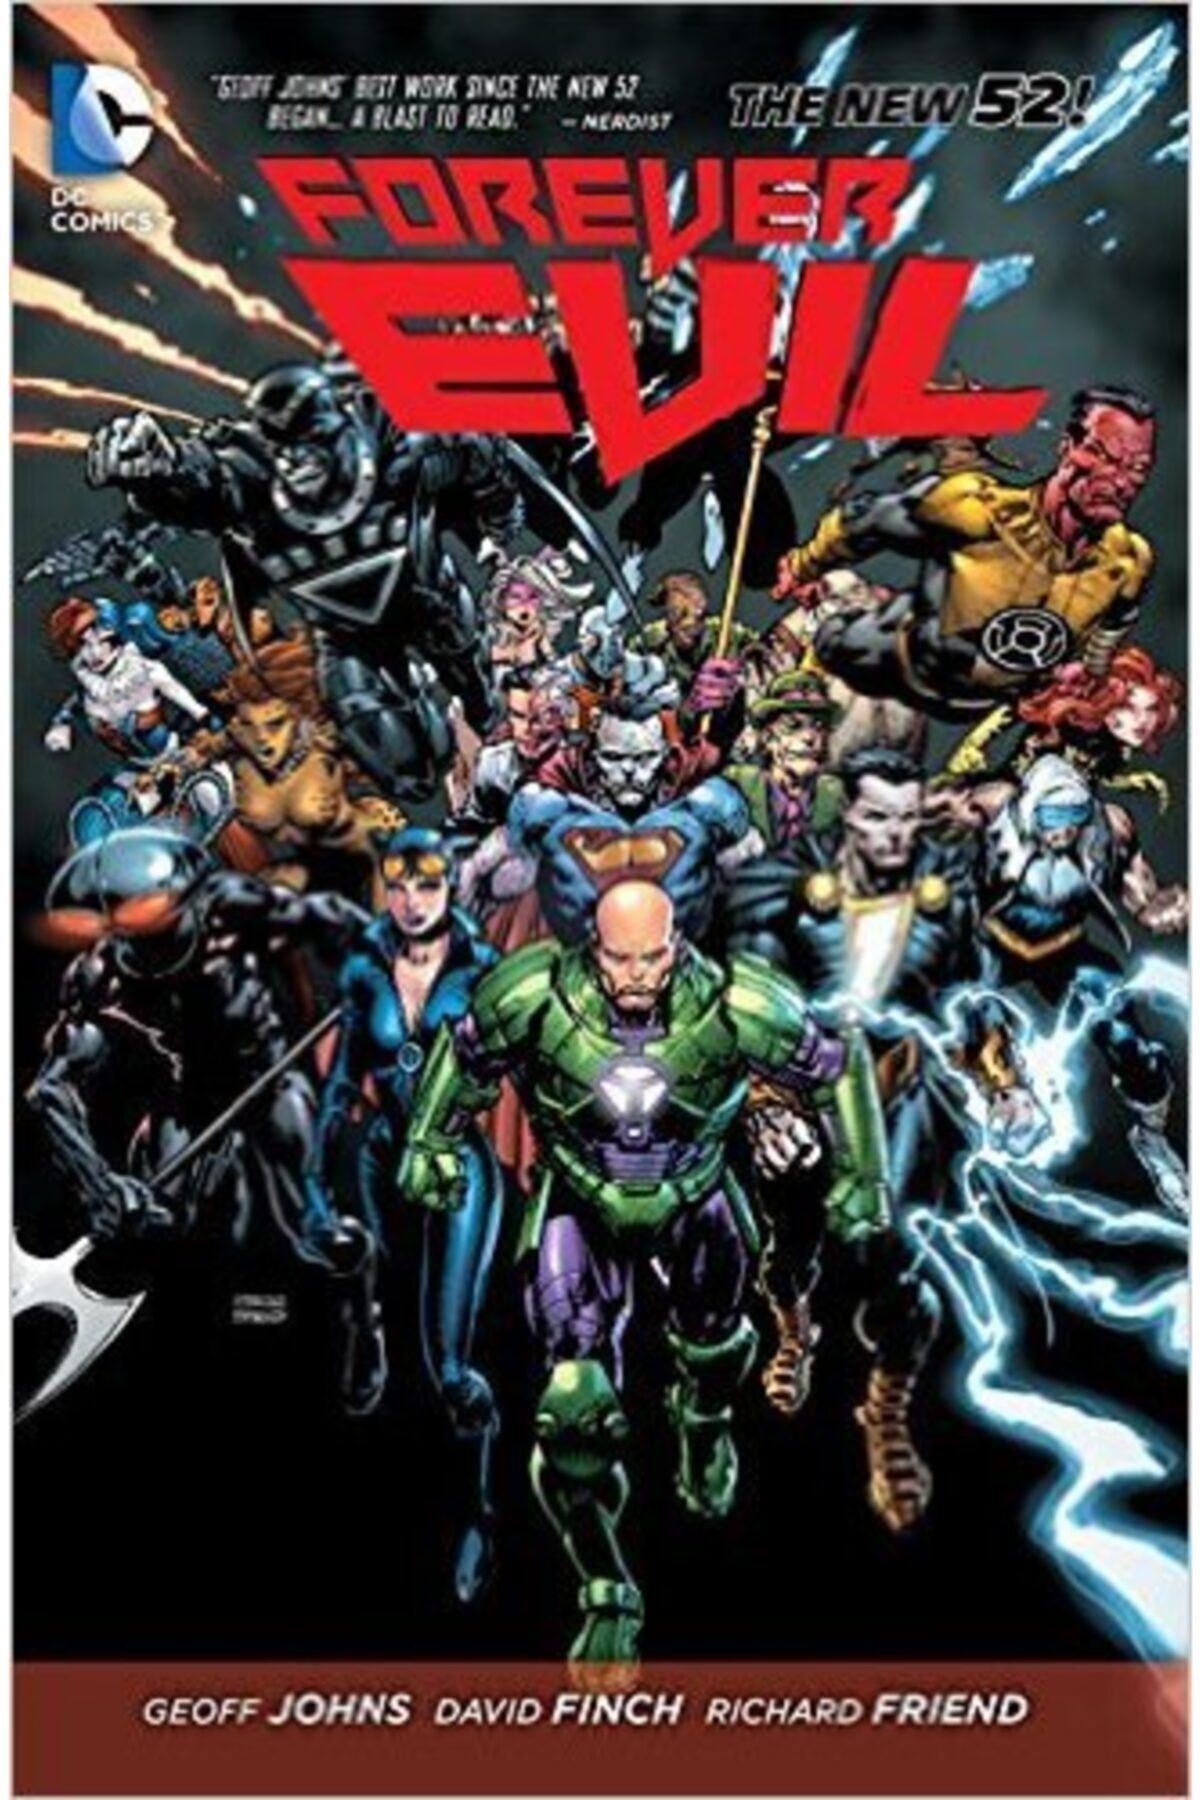 TM & DC Comics-Warner Bros Forever Evil